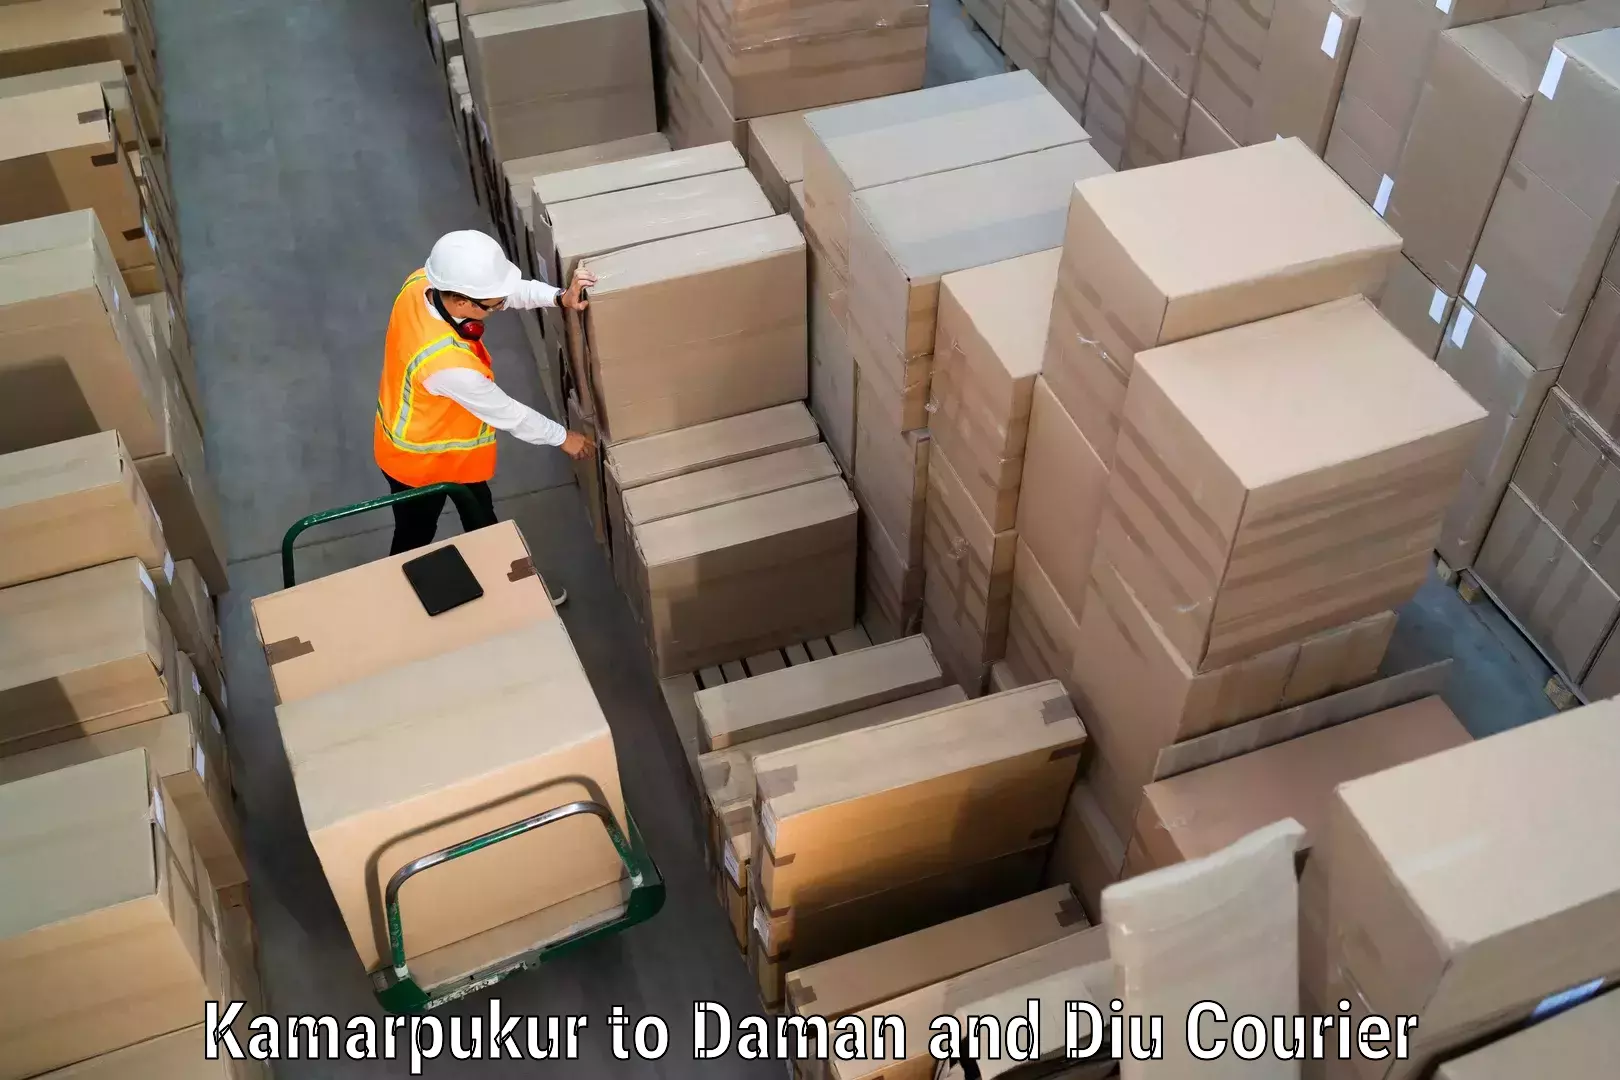 Efficient courier operations Kamarpukur to Daman and Diu